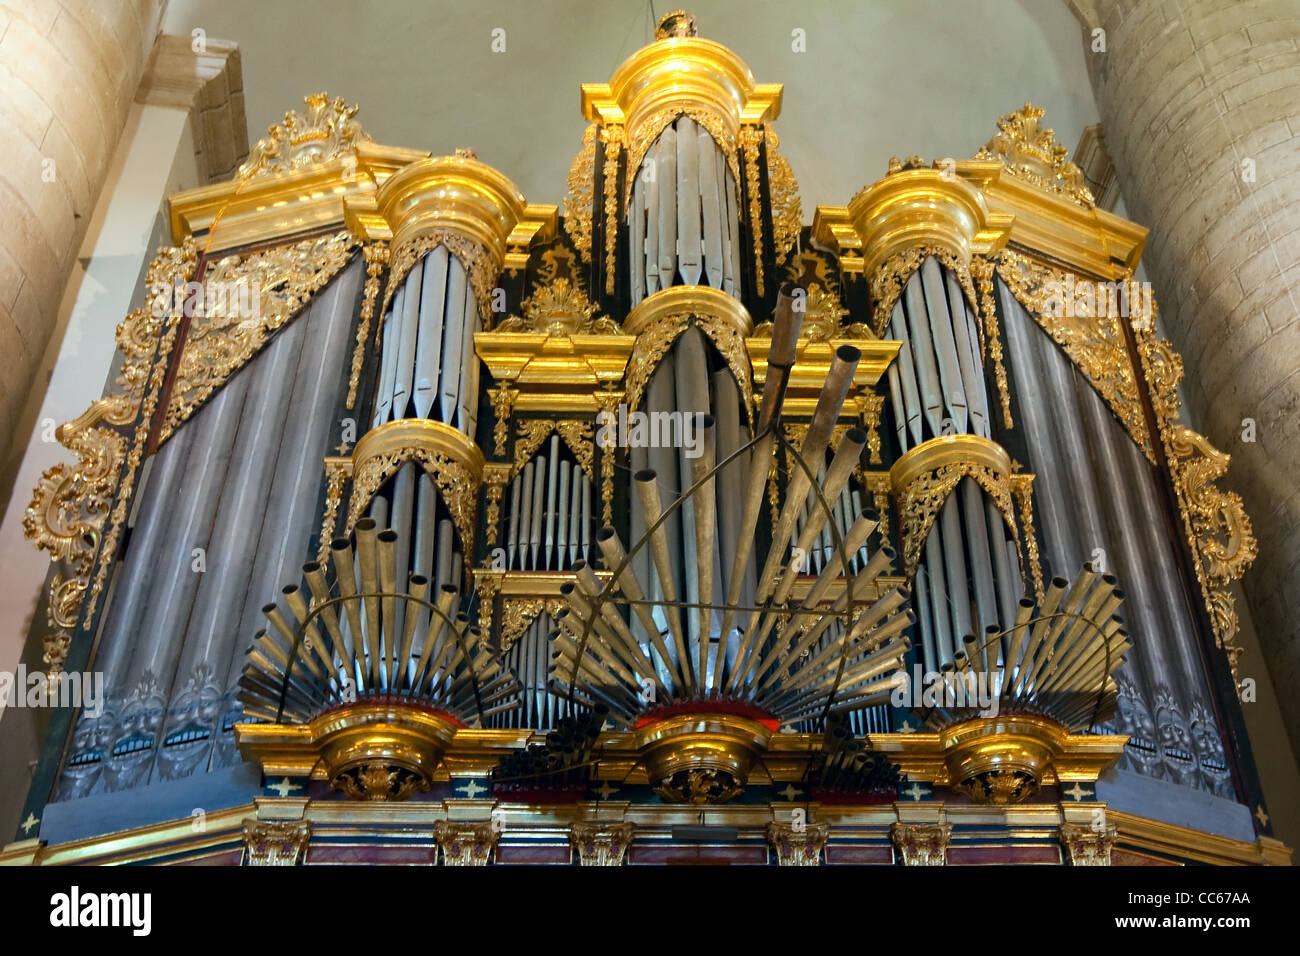 Organ in the Choir, Benedictine Church, Monasterio de Yuso, Yuso Monastery, San Millan de Cogolla, La Rioja Alta, Spain Stock Photo